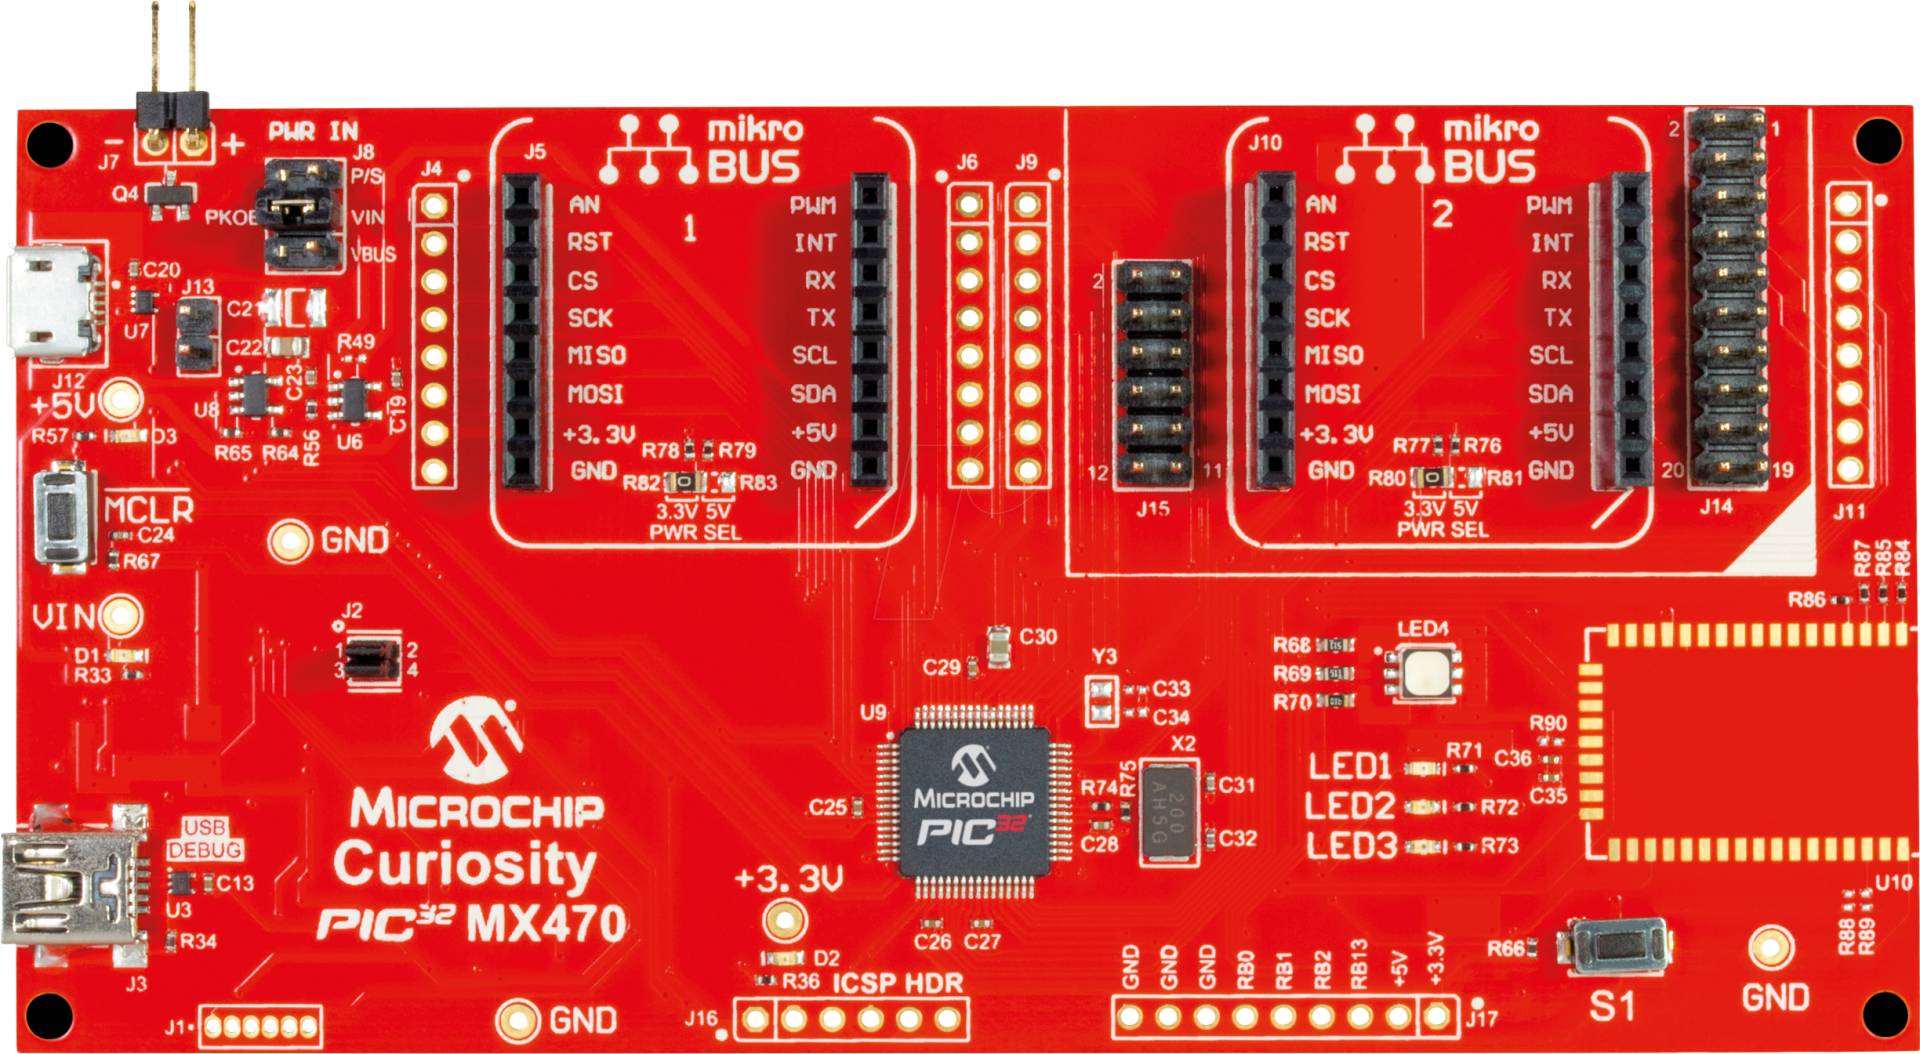 DM320103 - 32-bit Curiosity PIC32MX470 Entwicklungsboard (DM320103) von MICROCHIP